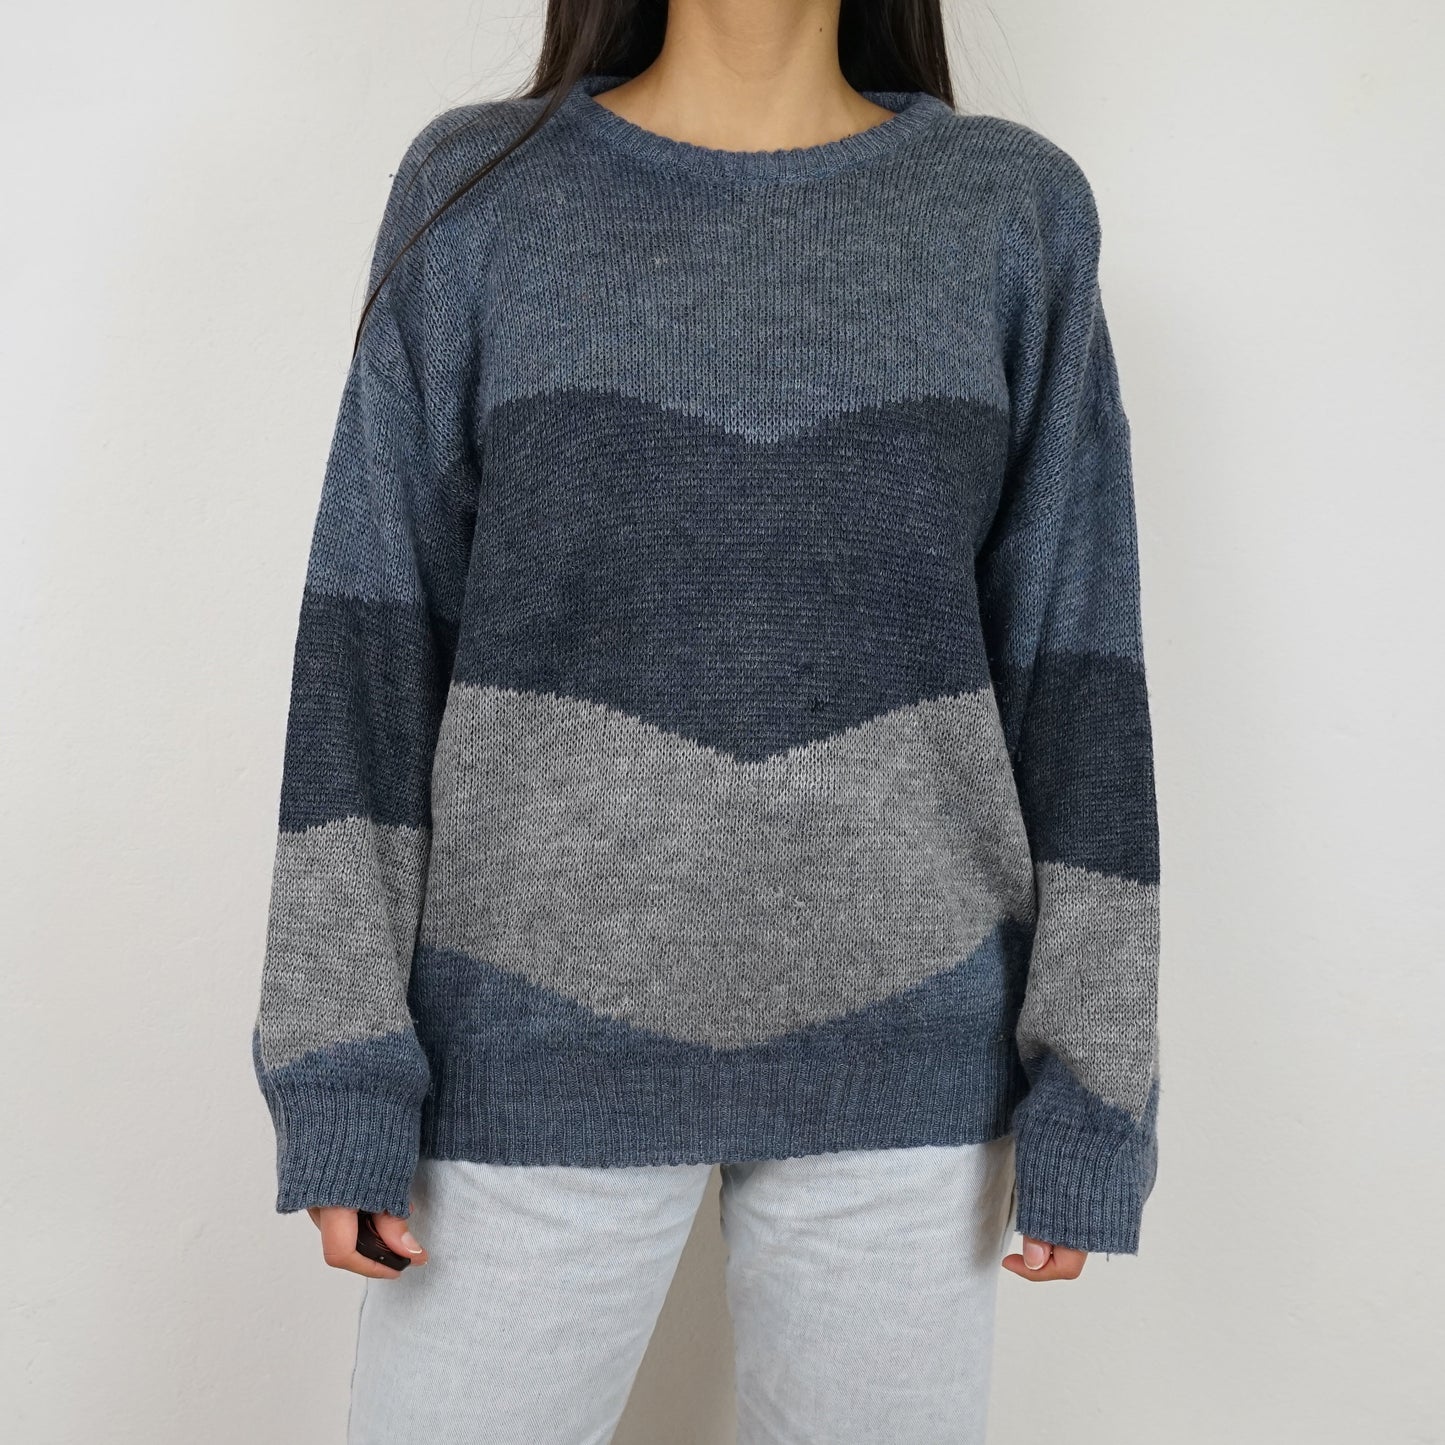 Vintage blue grey Pullover Size M-L